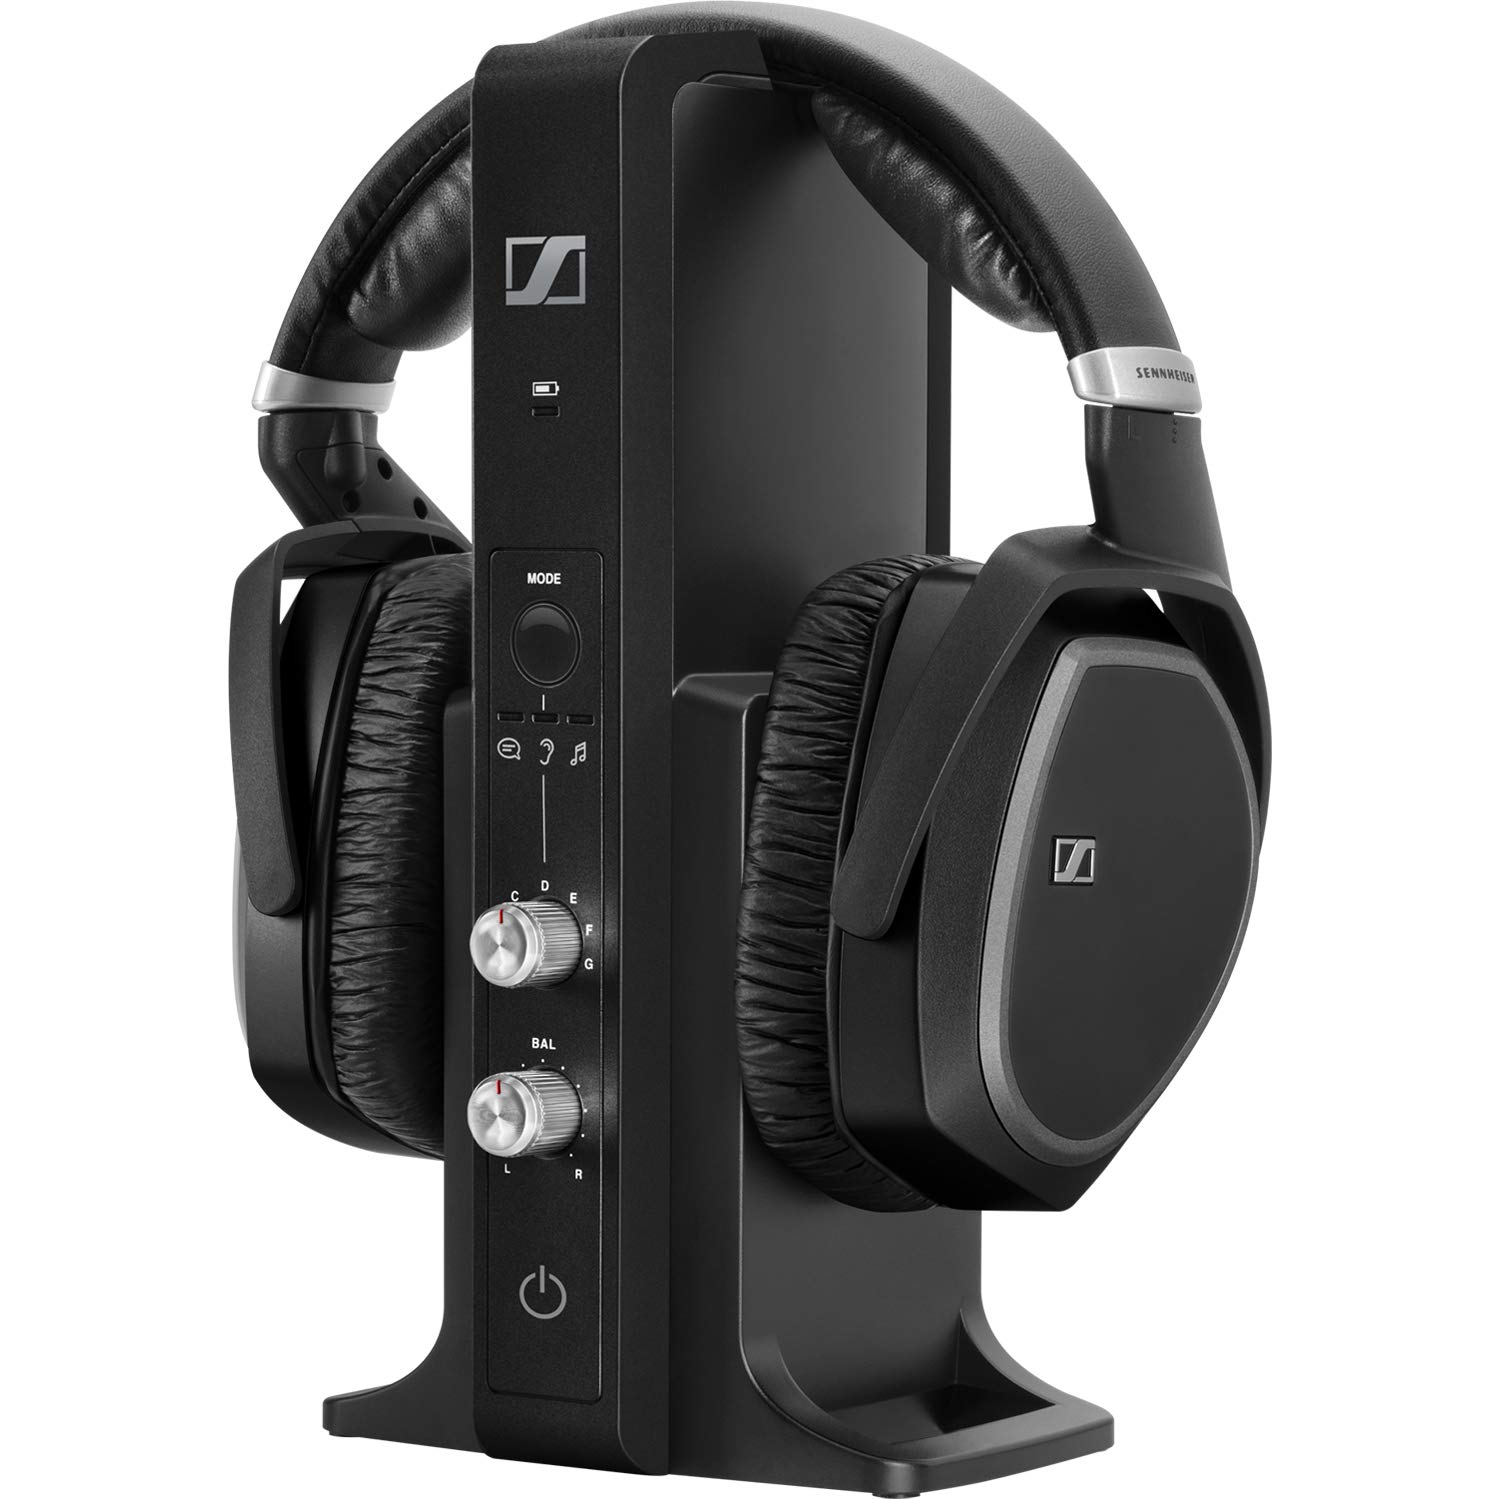 Sennheiser Consumer Audio Bezprzewodowe zestawy słuchawkowe RS 195 RF do słuchania telewizji z możliwością wyboru ustawienia wzmocnienia słuchu